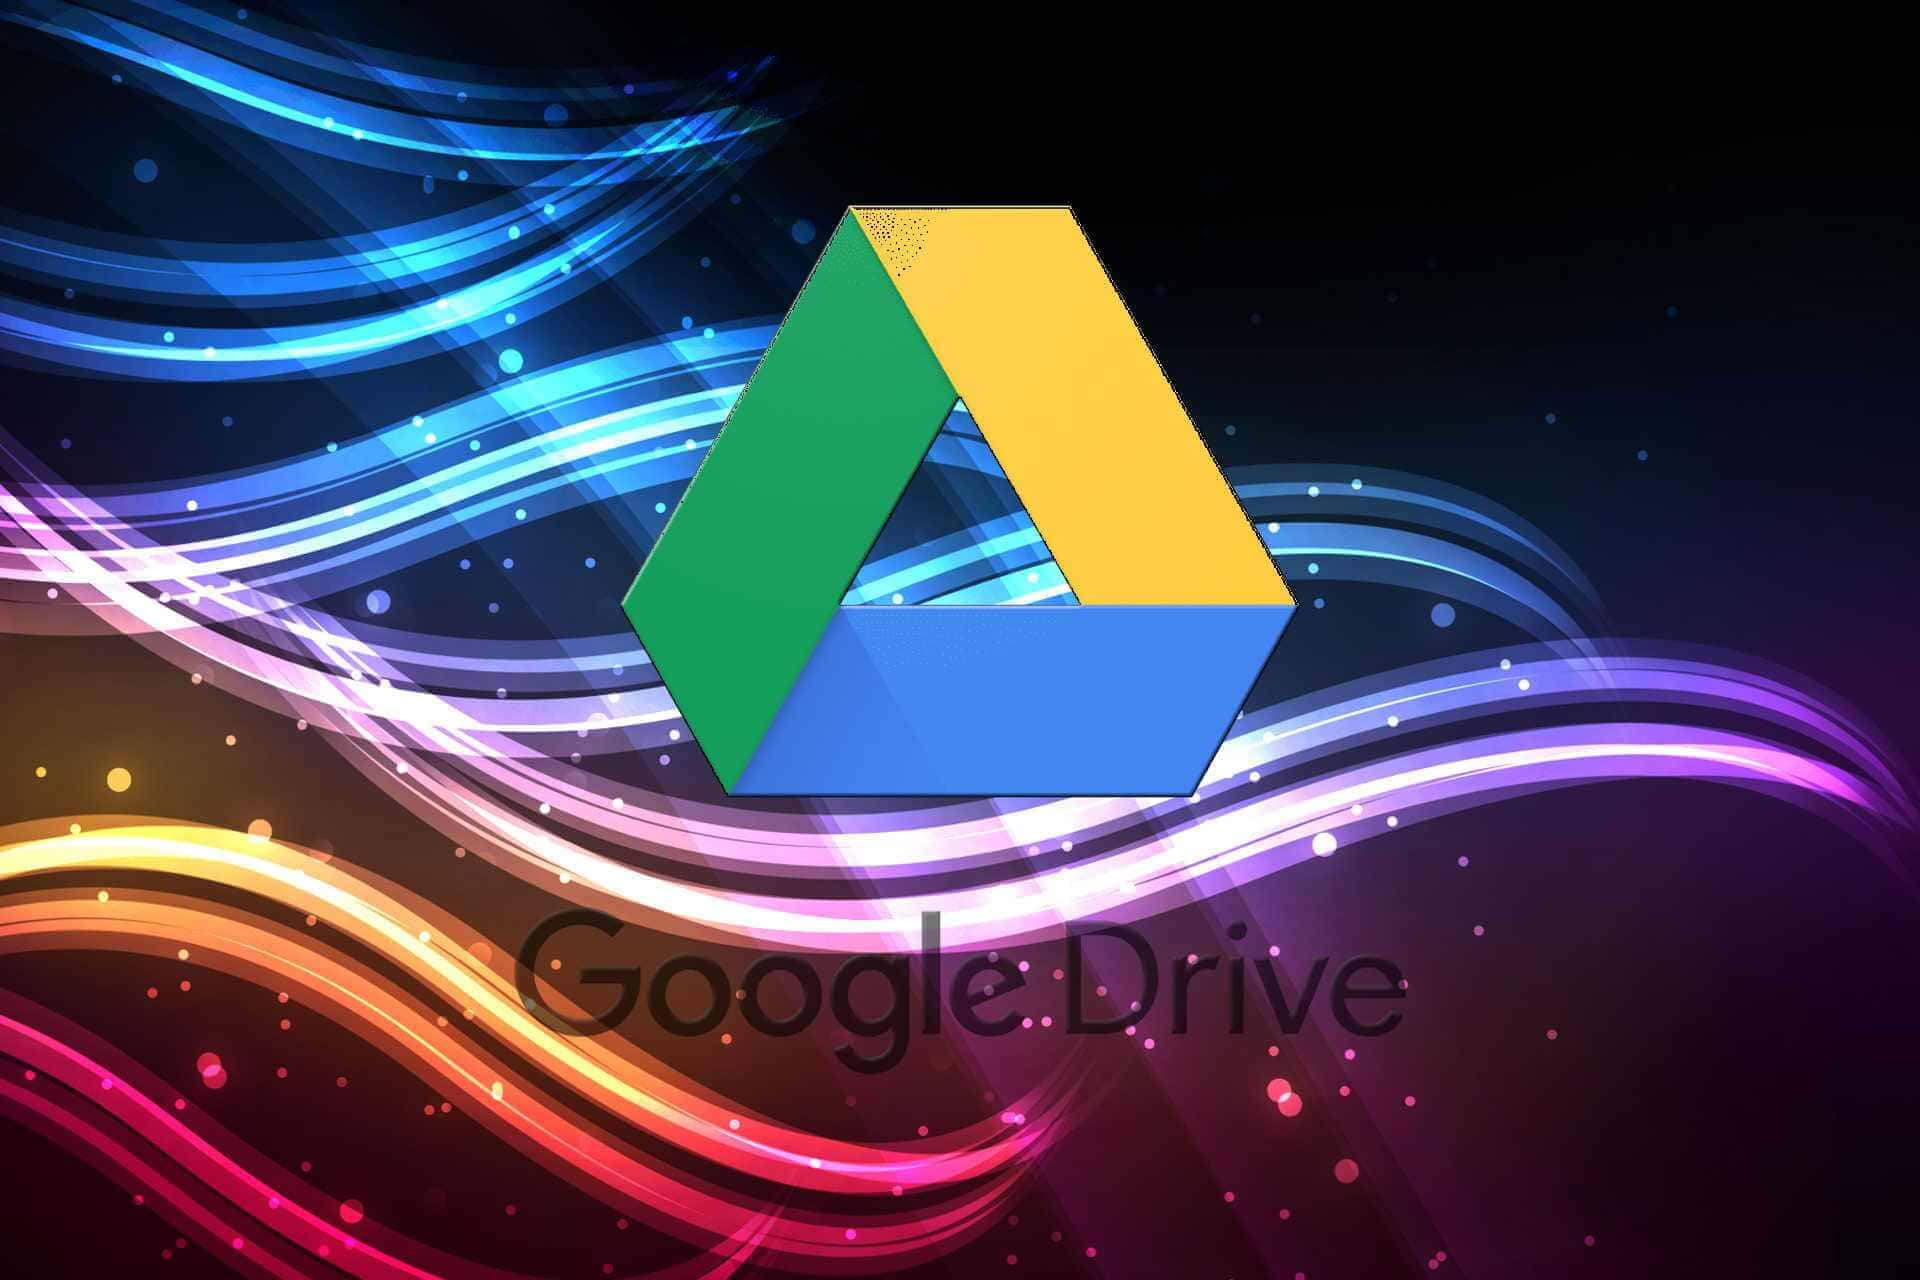 Google Drive Colorful Digital Art Wallpaper